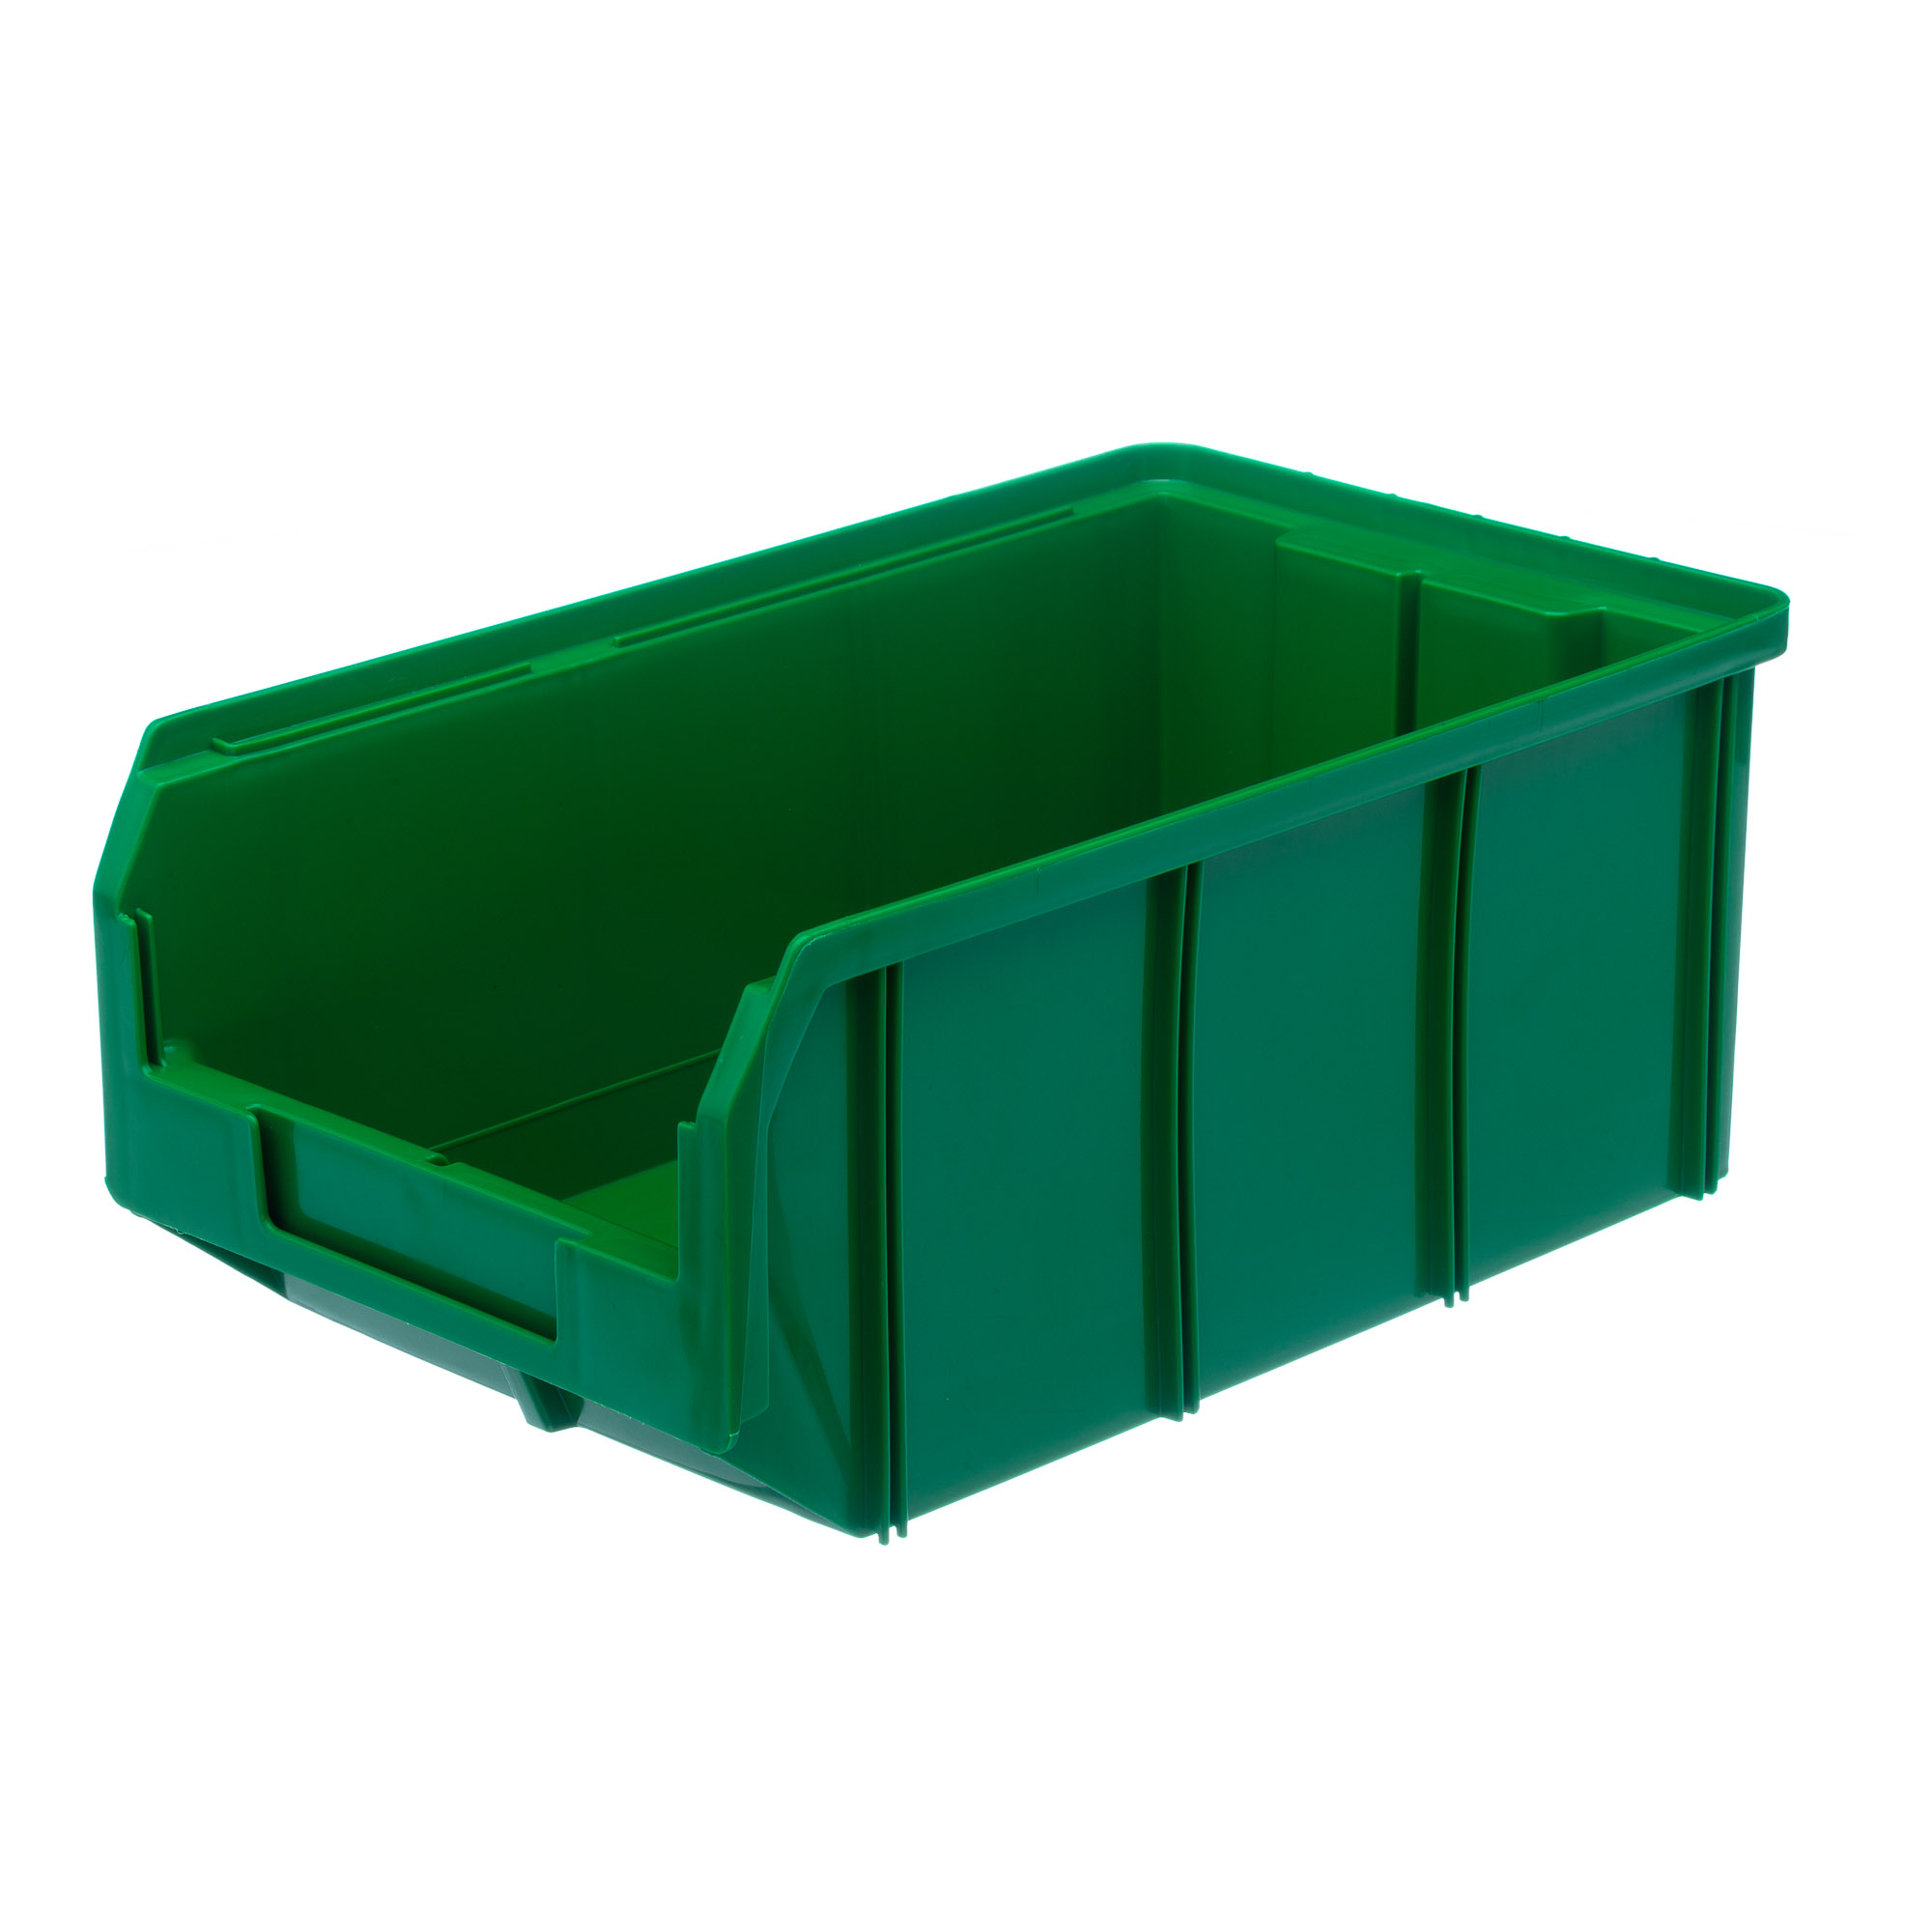 Пластиковый ящик Стелла-техник V-3-зеленый 342х207x143мм, 9,4 литра пластиковый лоток водоотводный gidrolica